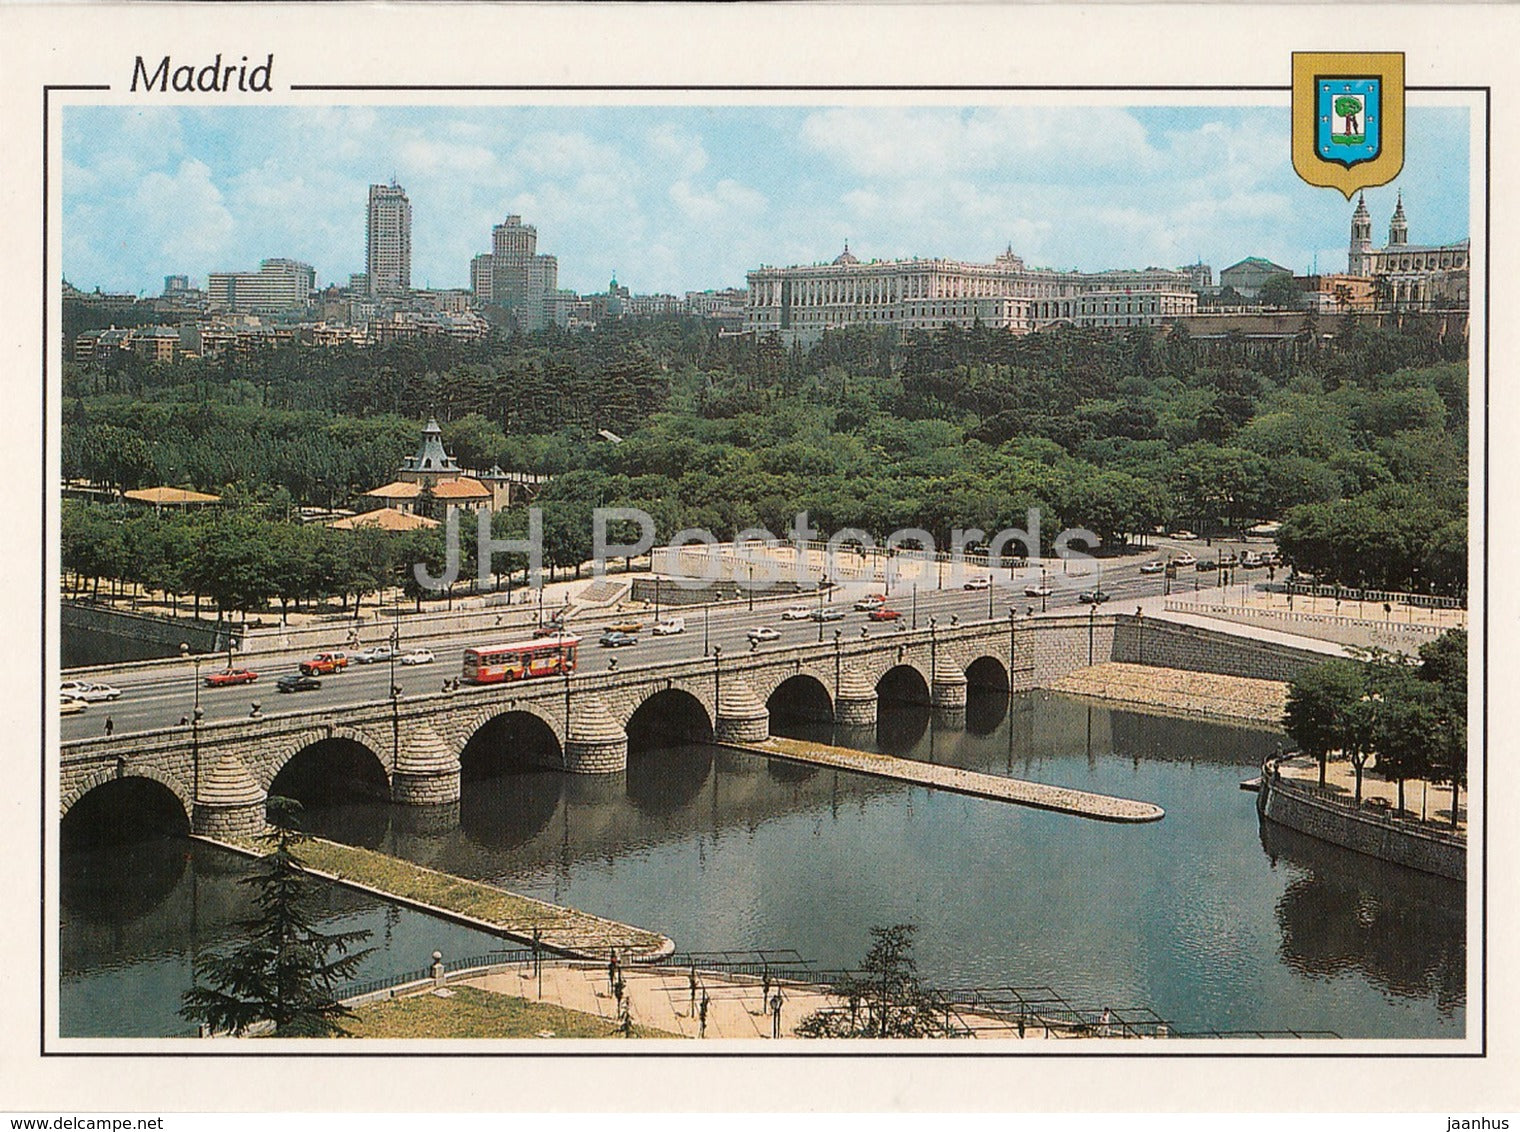 Madrid - Puente de Segovia y Rio Manzanares - Bridge of Segovia and Manzanares river - bus - 137 - Spain - unused - JH Postcards